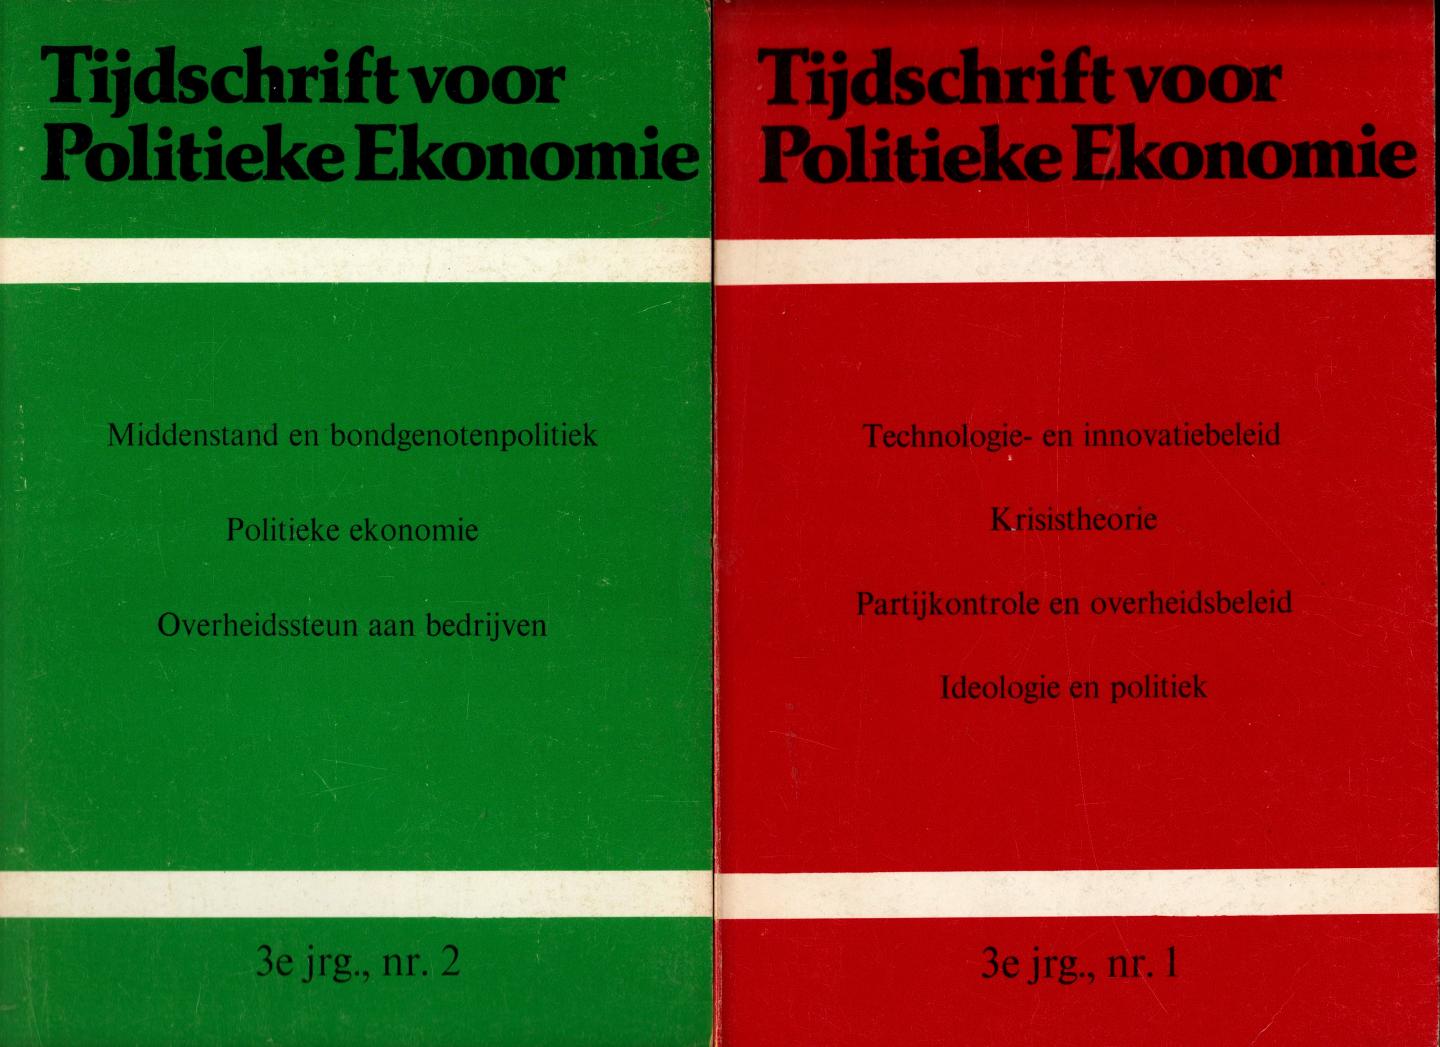 TIJDSCHRIFT VOOR POLITIEKE ECONOMIE - TIJDSCHRIFT VOOR POLITIEKE ECONOMIE, 3e jrg. 1979 nr.s 1 en 2